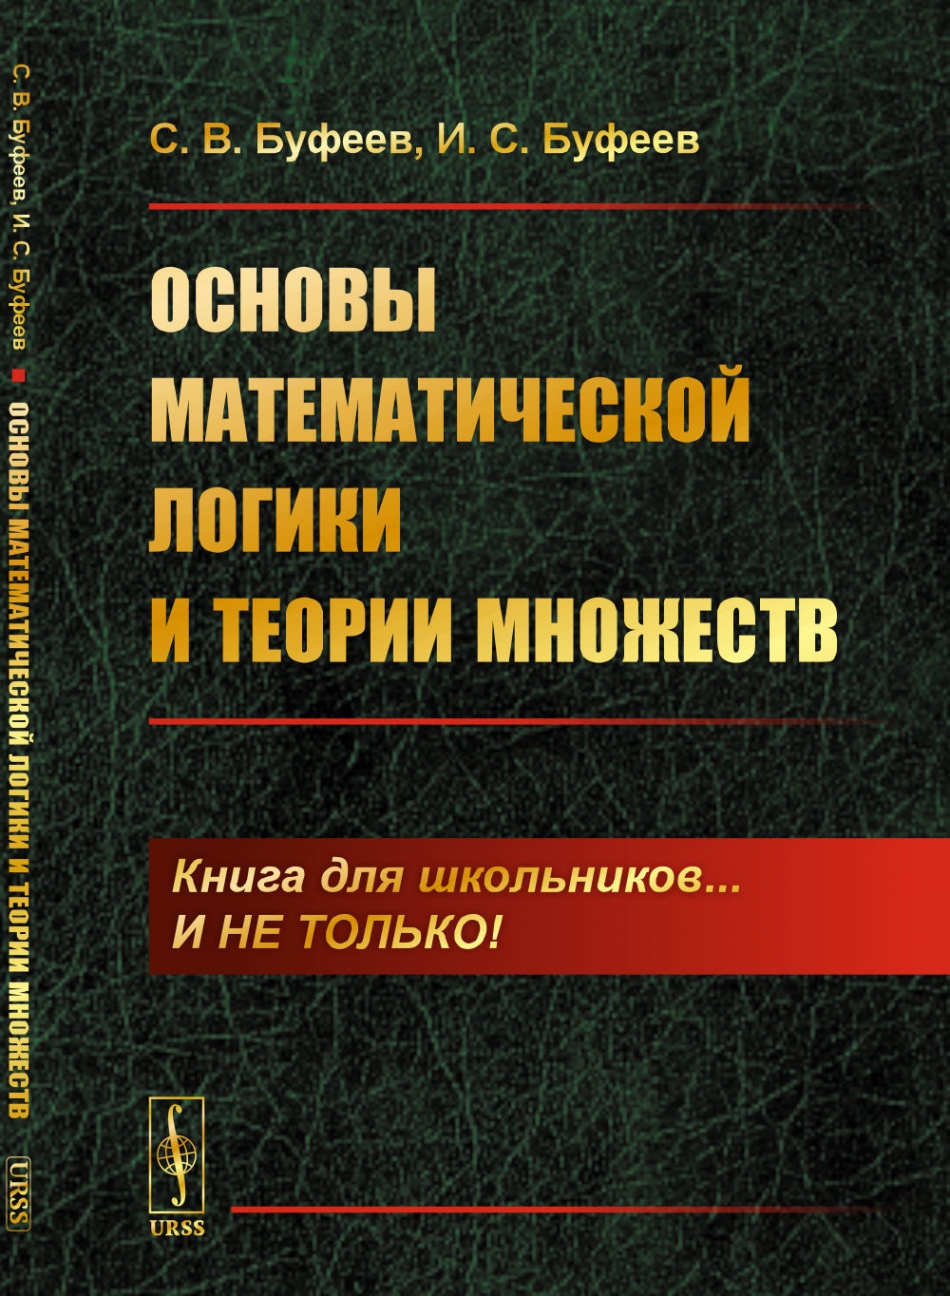 Буфеев С.В., Буфеев И.С. Основы математической логики и теории множеств.  